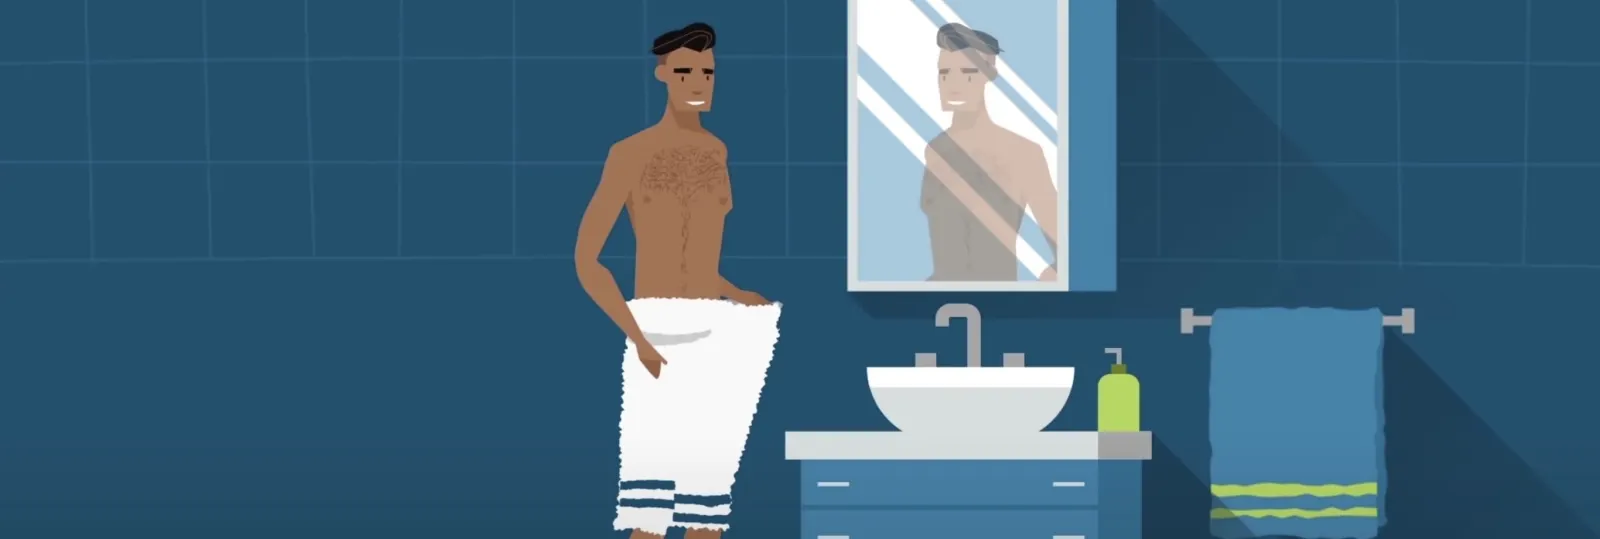 Depilación masculina: cómo depilar la zona íntima en 6 pasos 